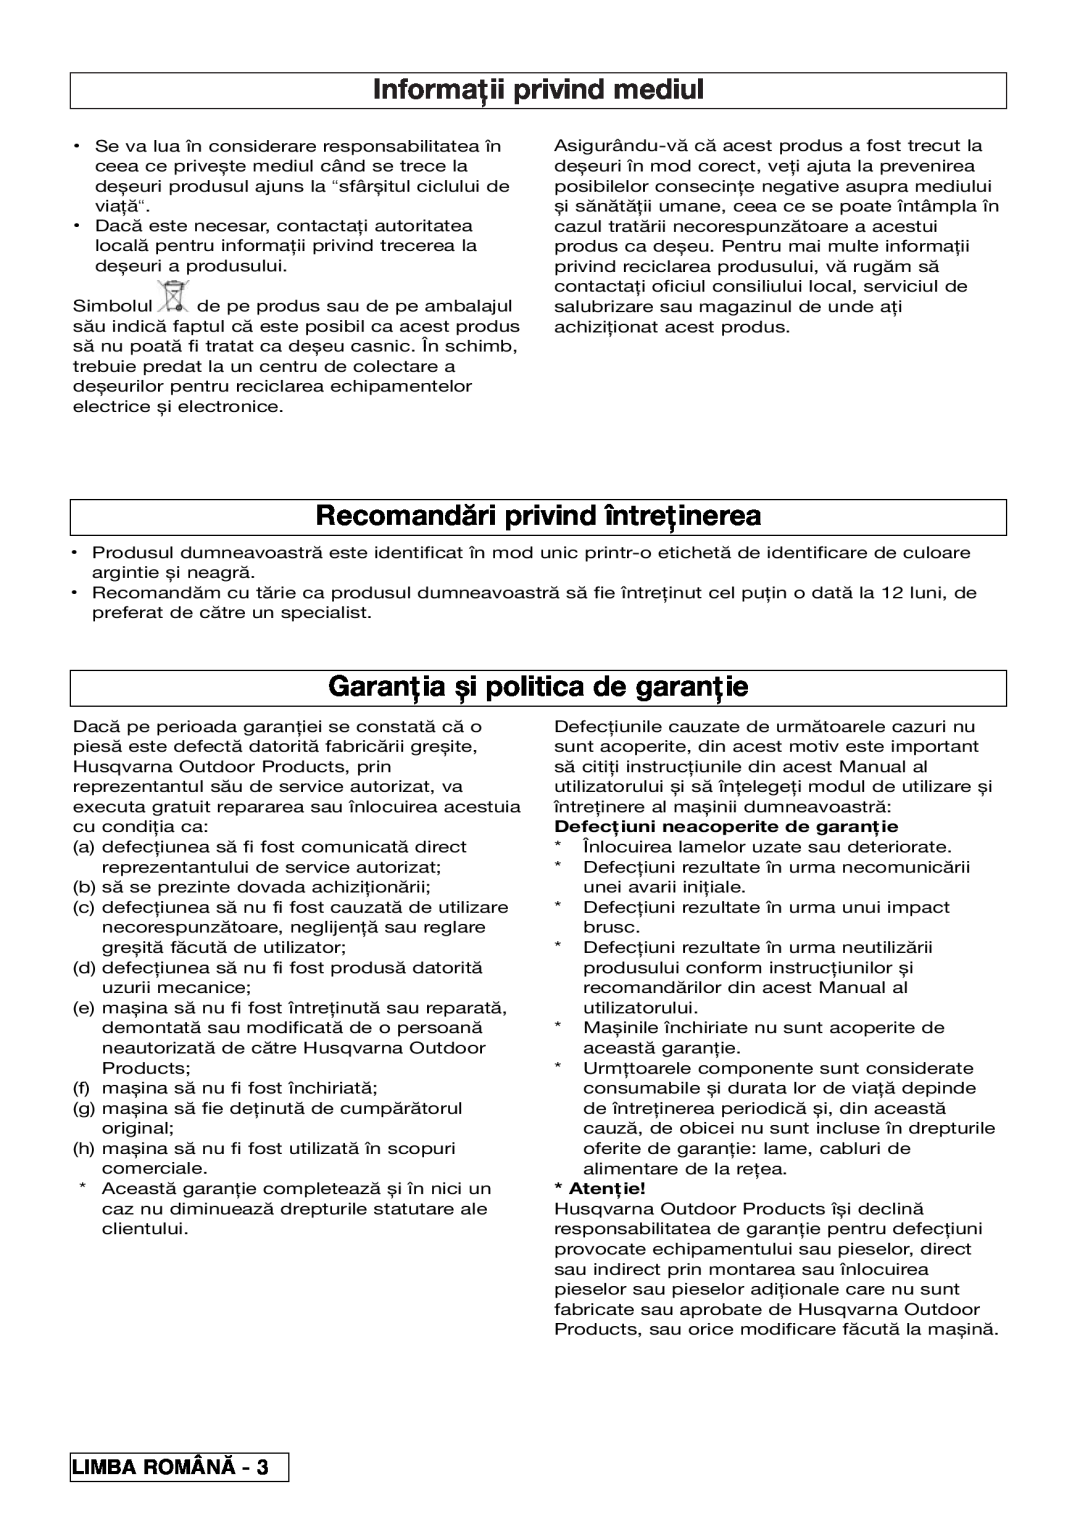 Flymo VM032 Informaţii privind mediul, Recomandări privind întreţinerea, Garanţia și politica de garanţie, Limba Român 